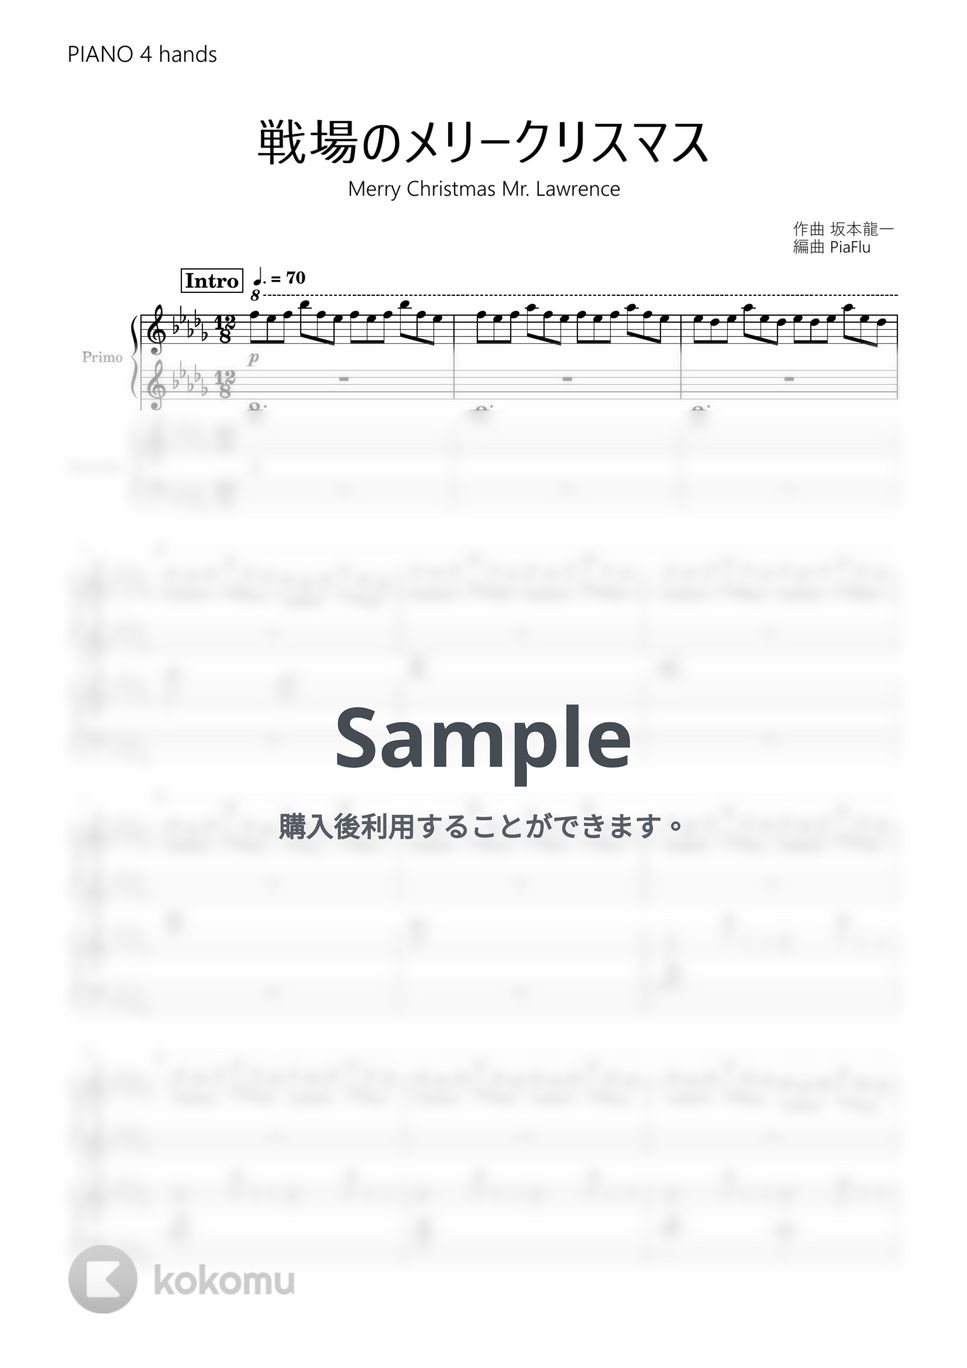 坂本龍一 - 戦場のメリークリスマス (ピアノ連弾) by PiaFlu